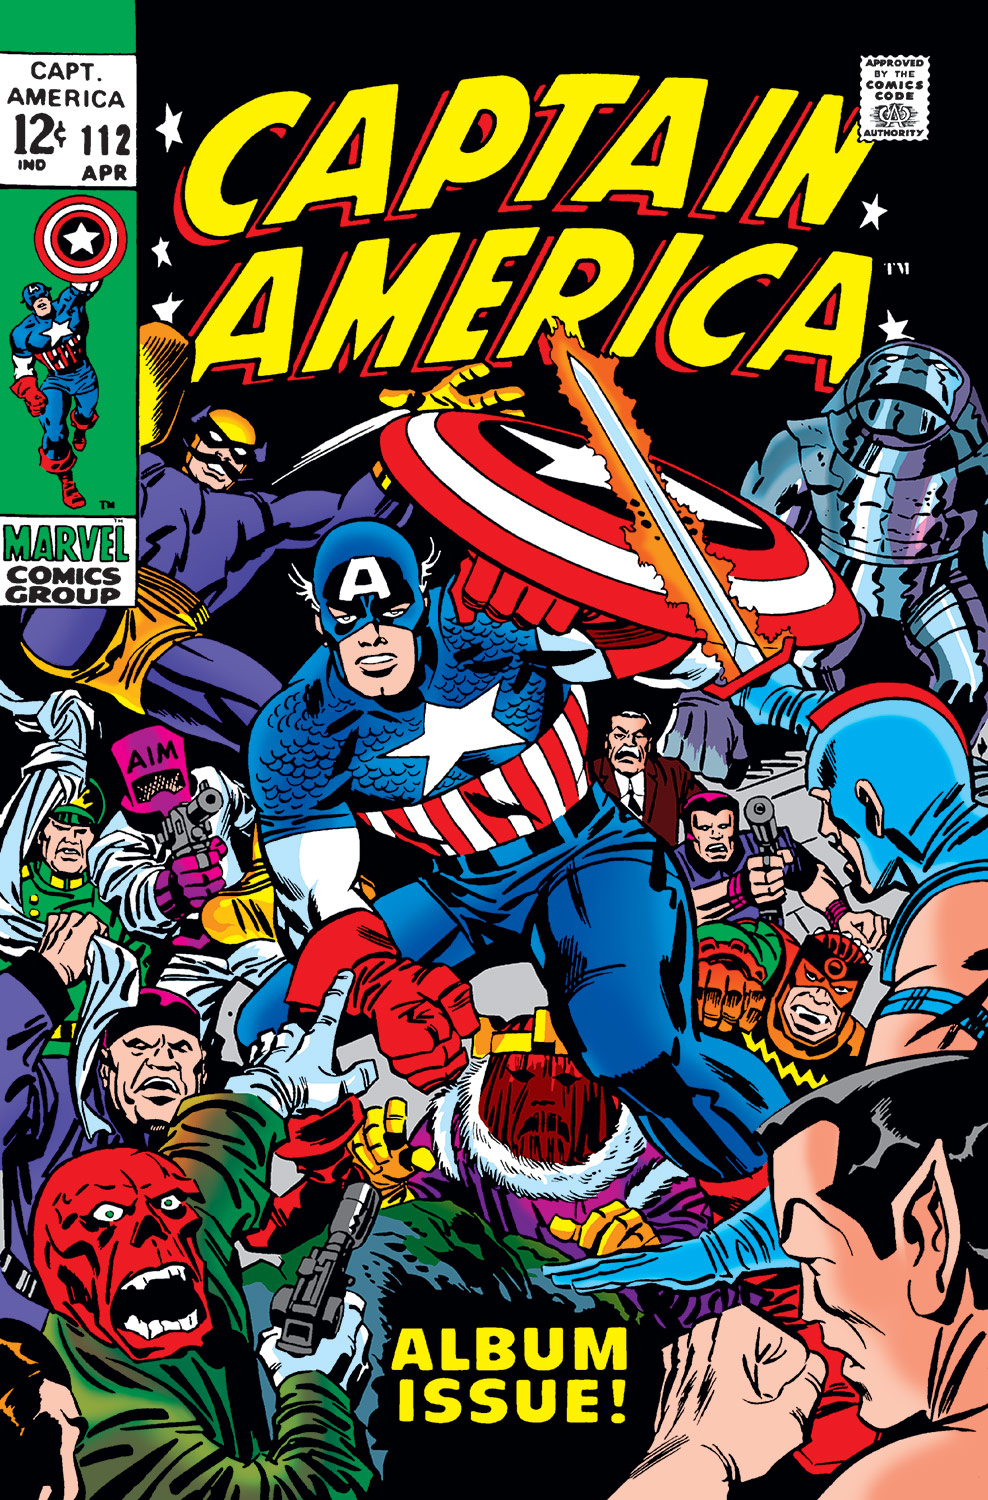 アメコミリーフ Captain America #112 CGC 4.5112